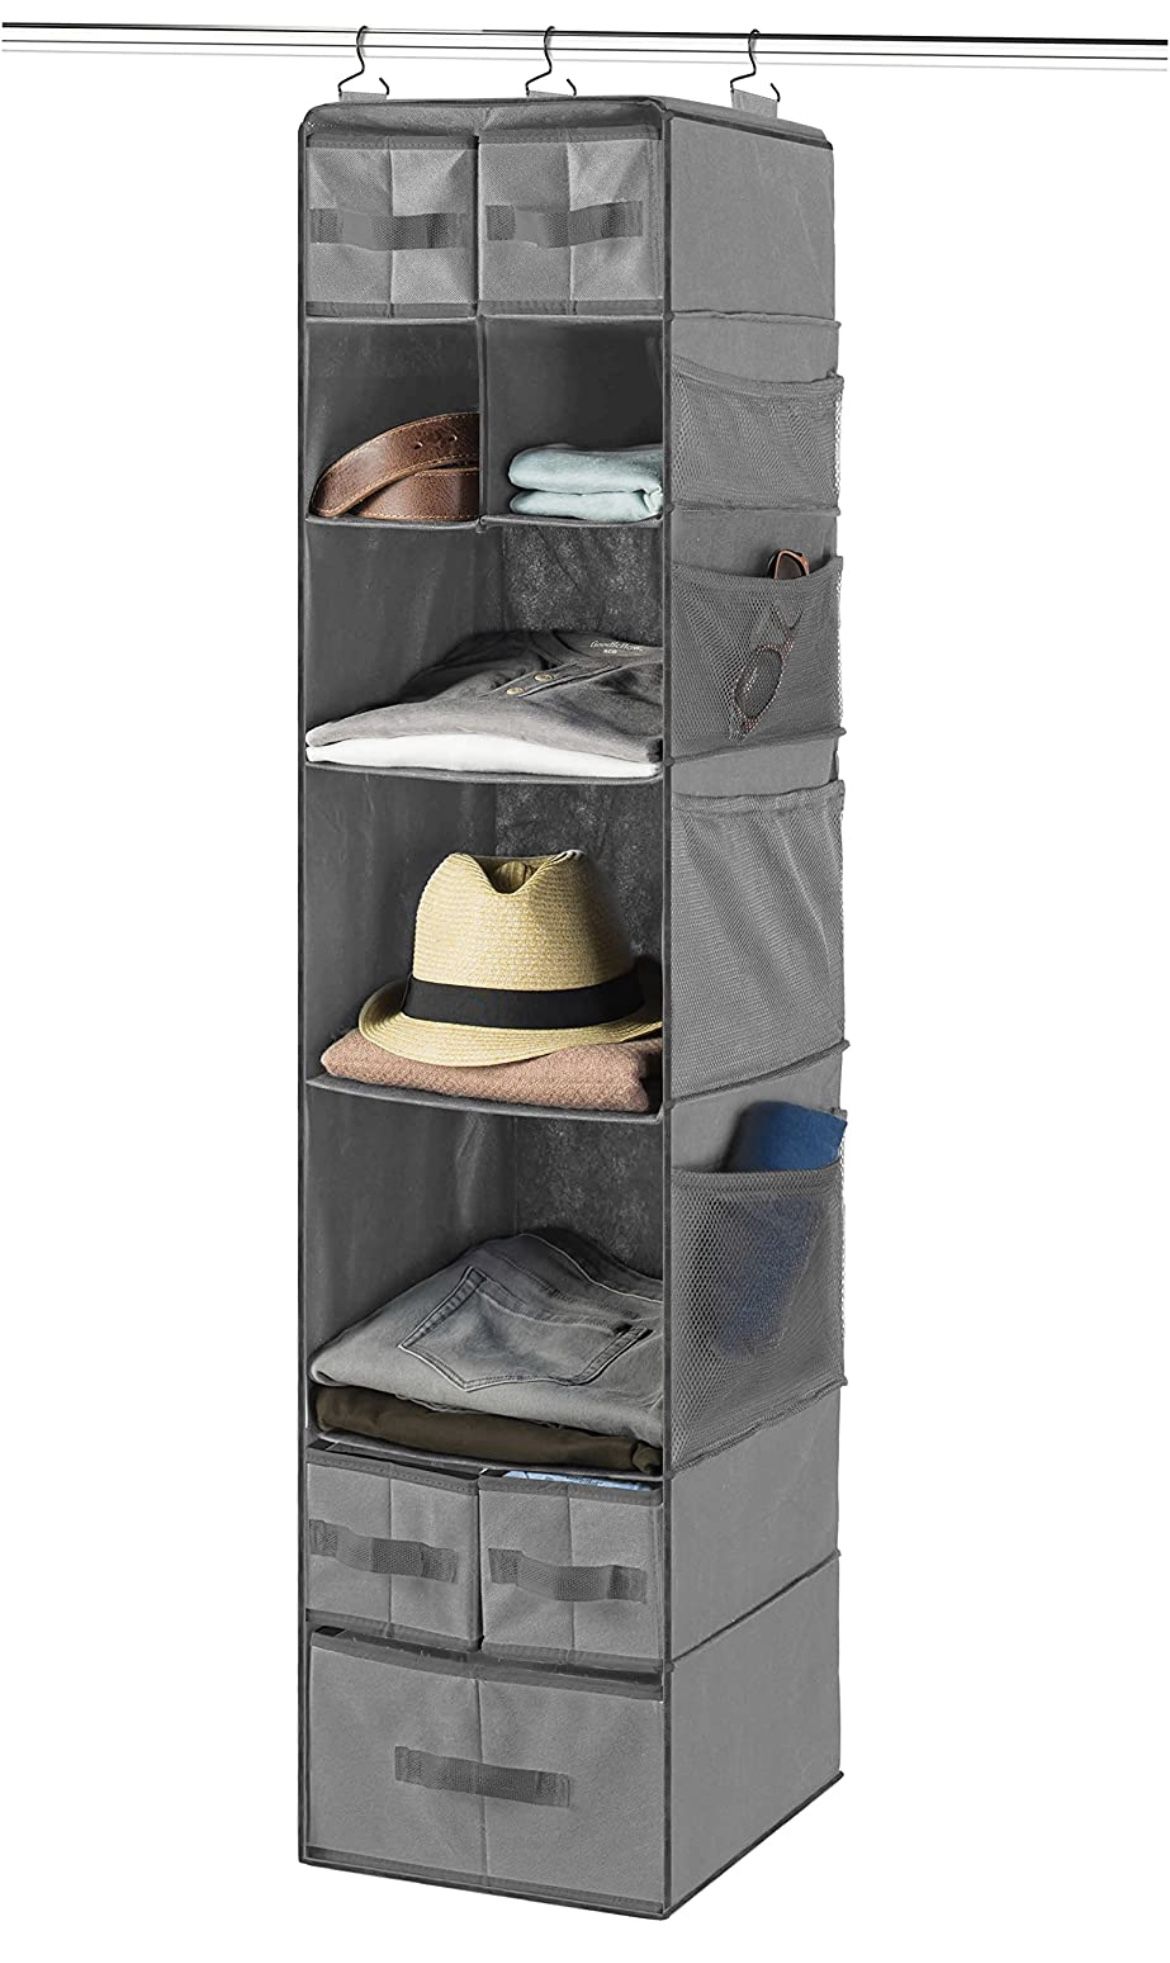 9 Shelf Closet organizer